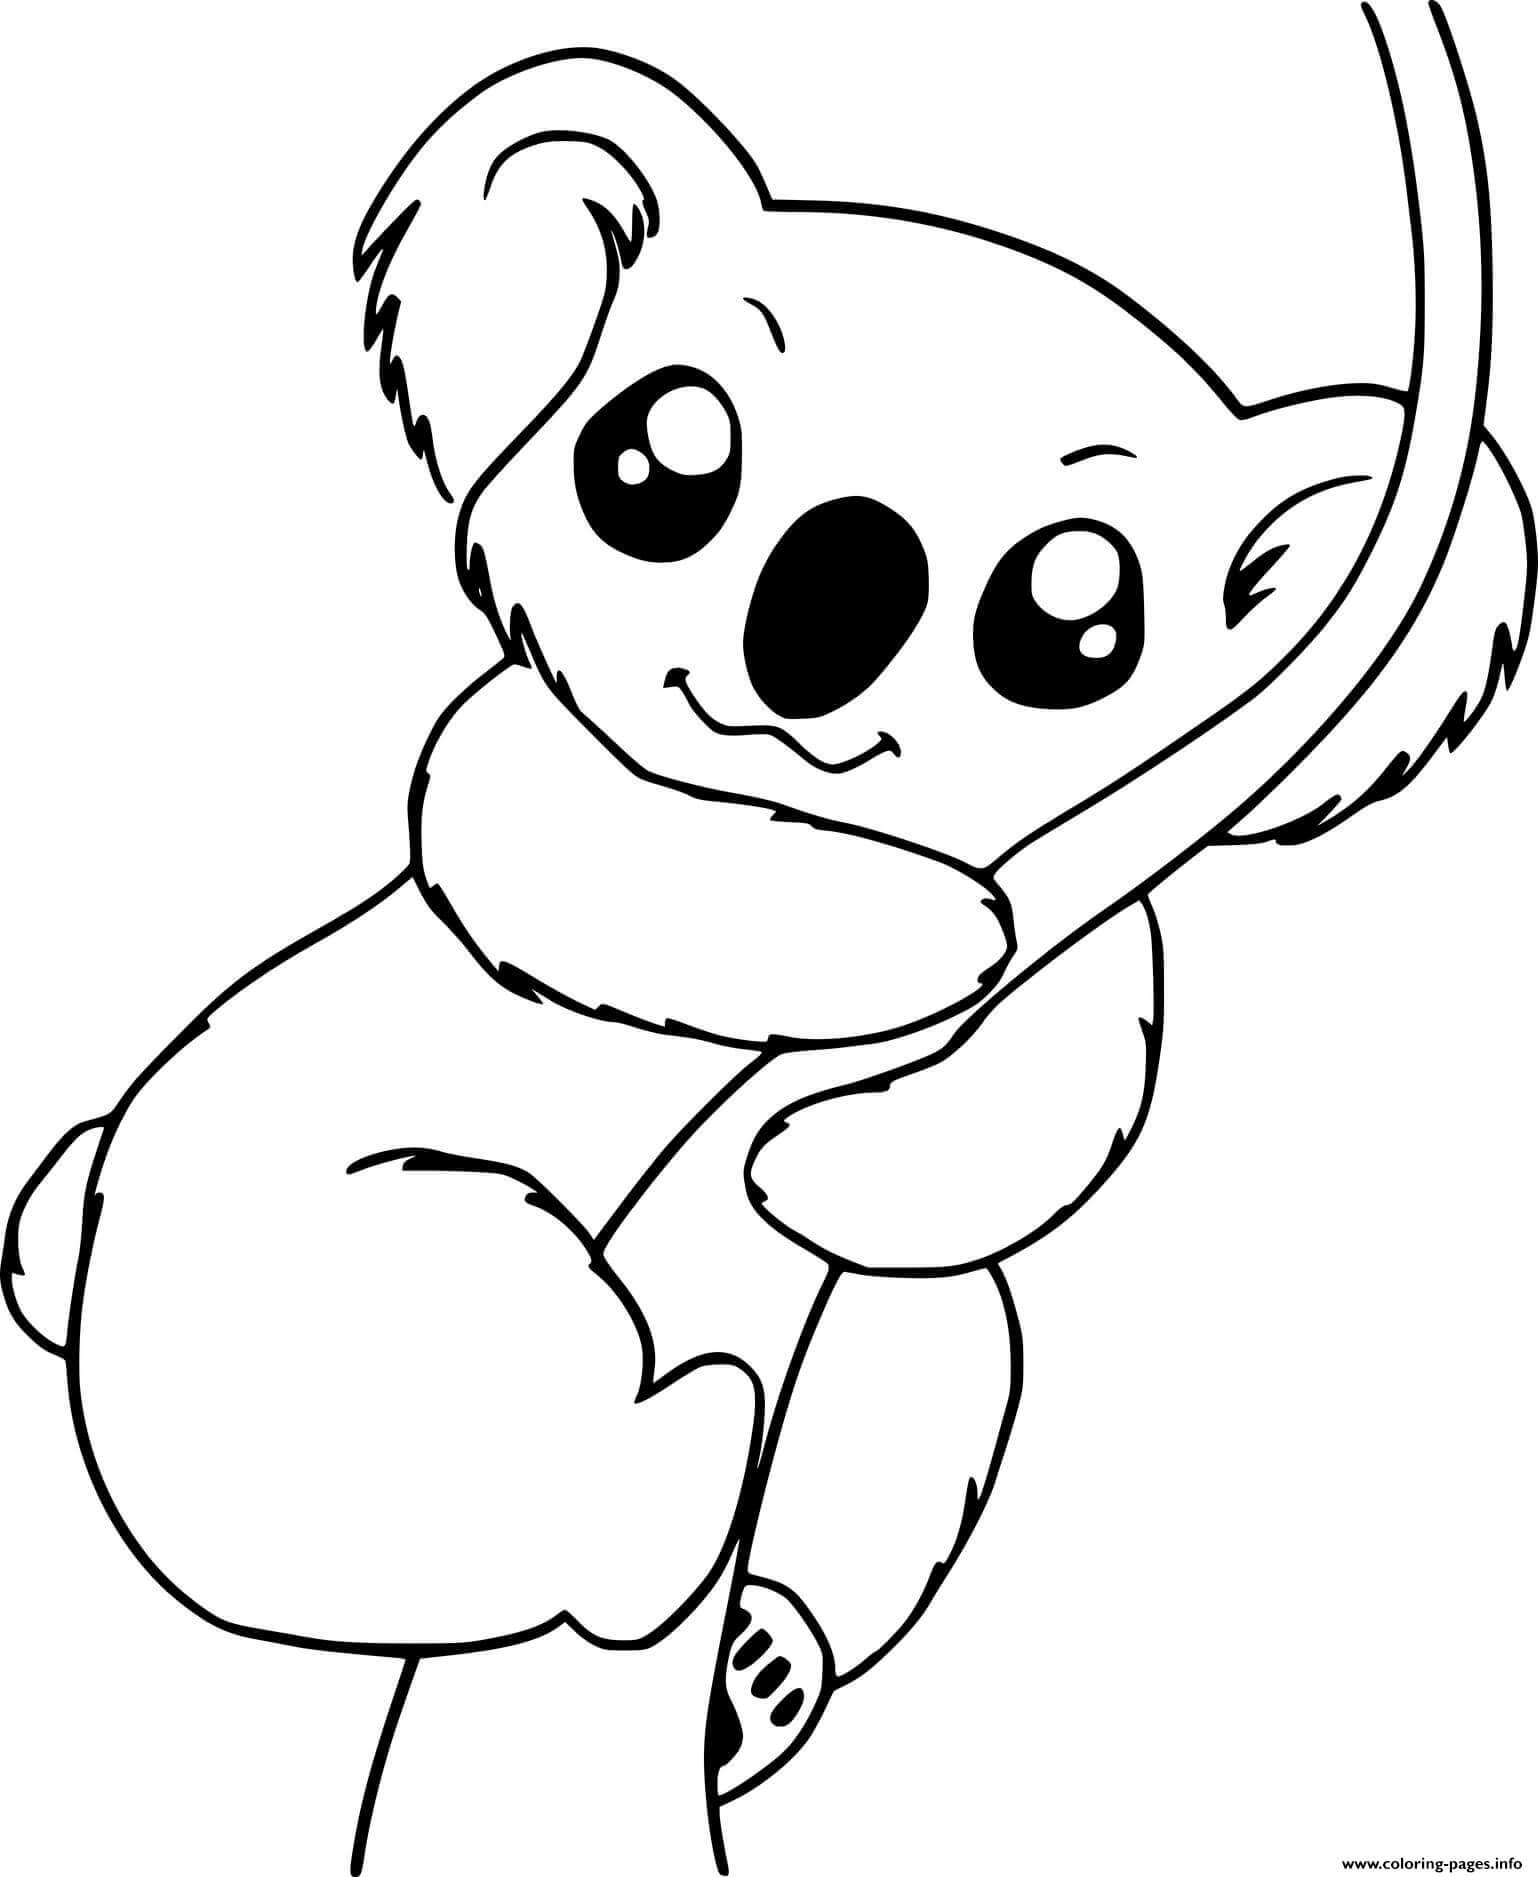 Dibujos de Escalada de Koalas para colorear